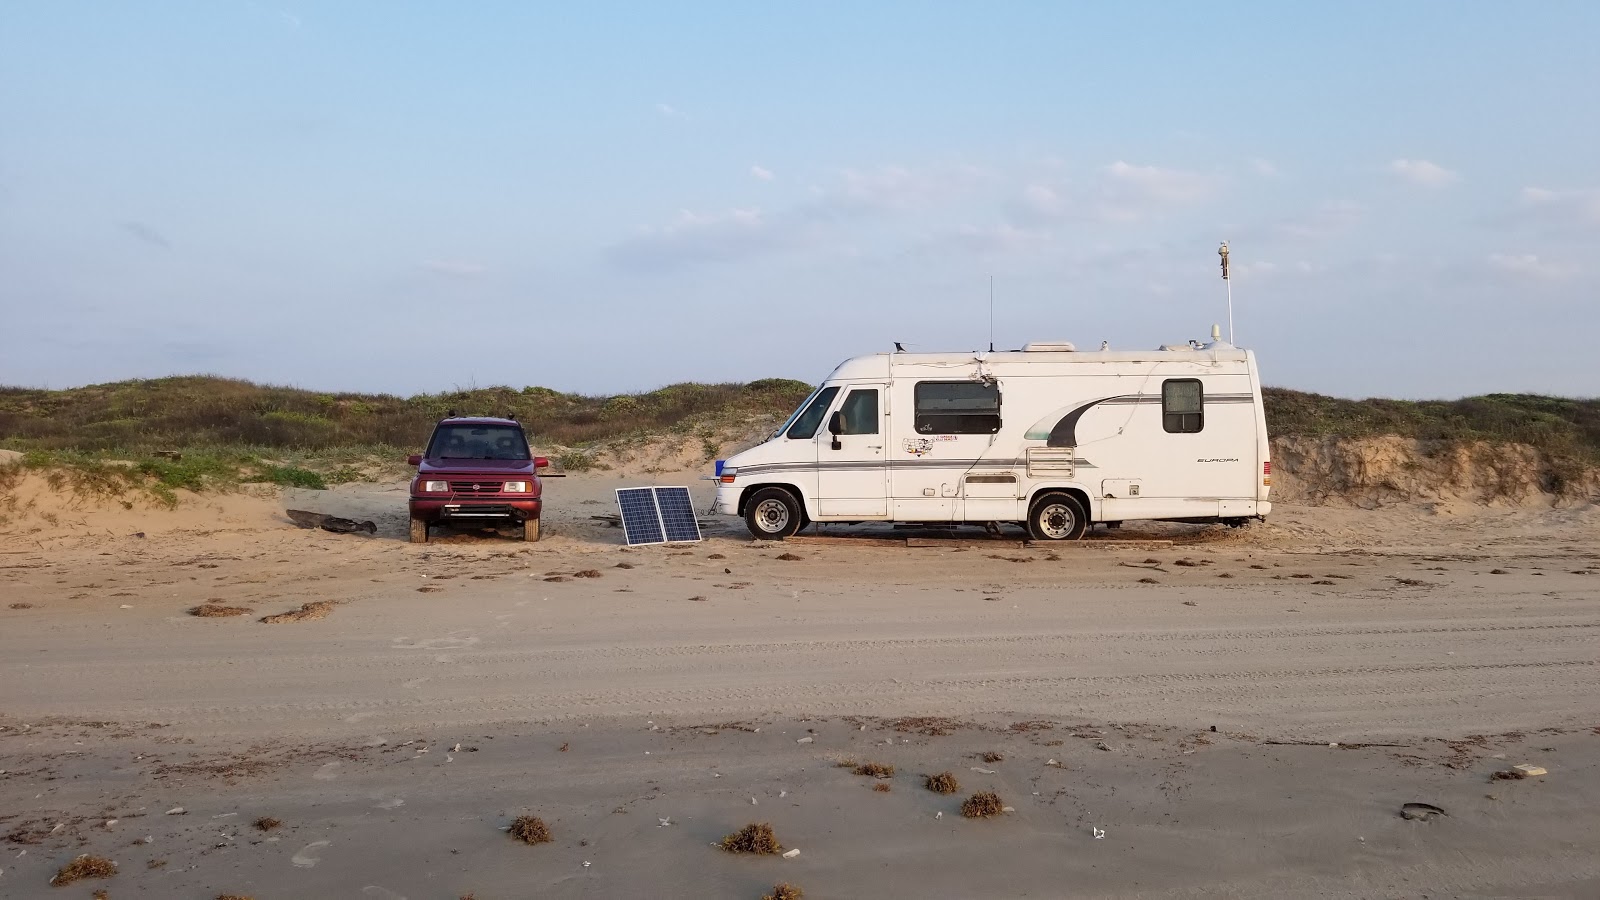 North beach Camping的照片 - 适合度假的宠物友好场所